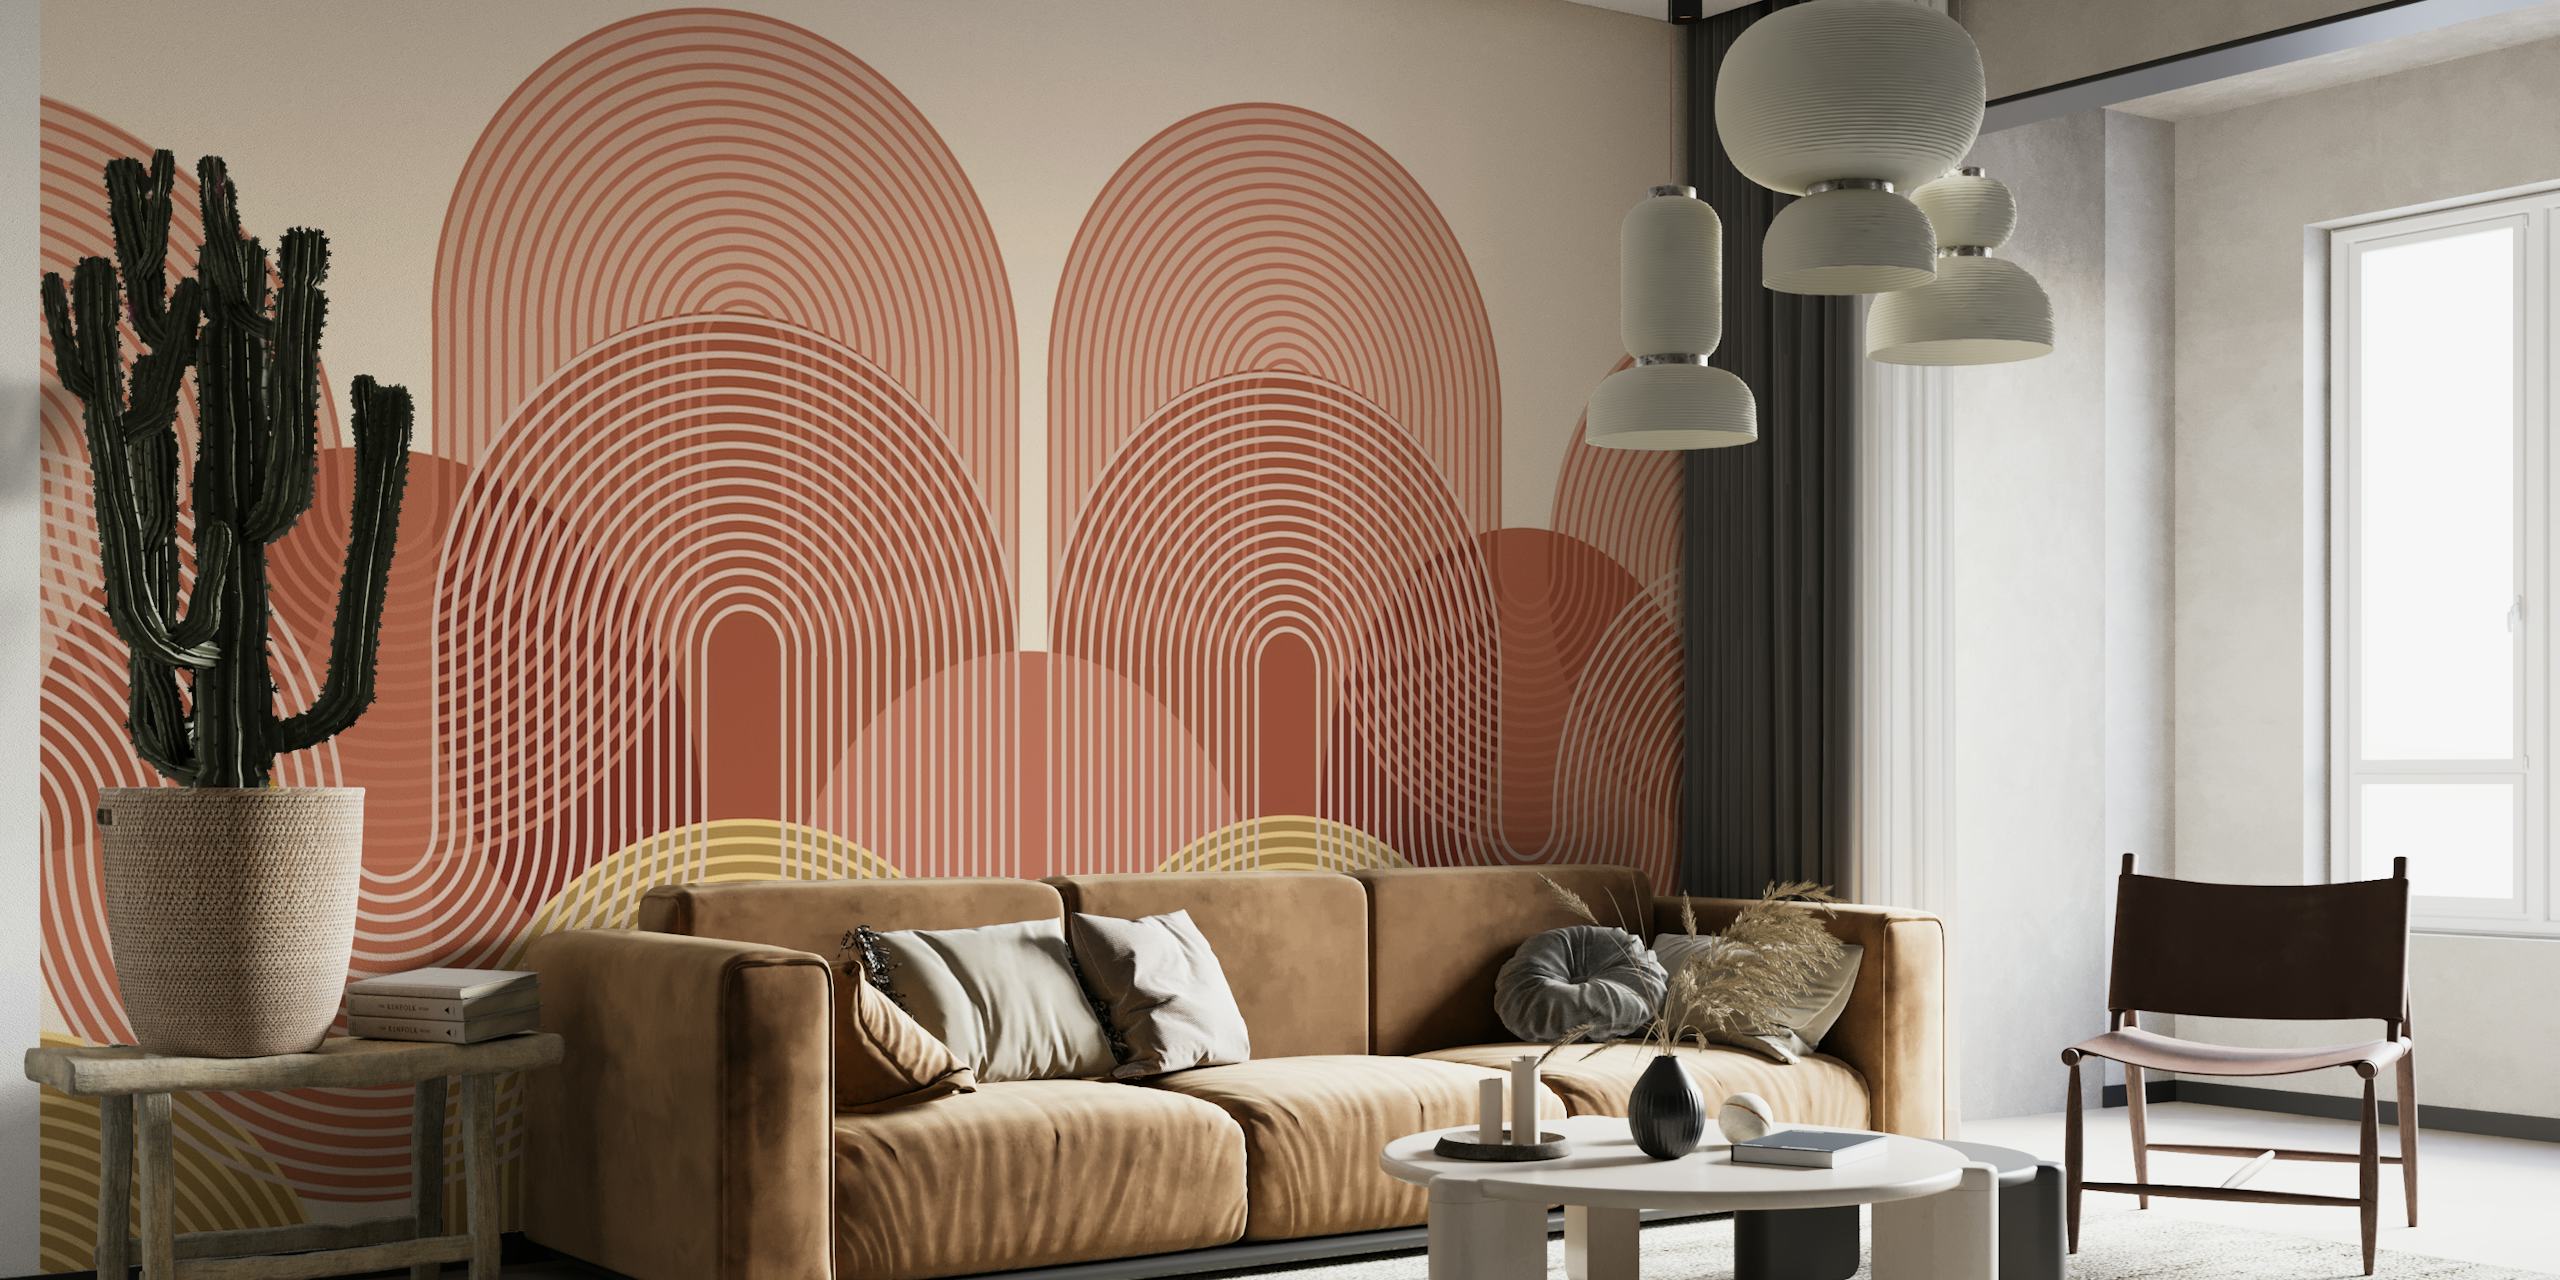 Wandbild mit abstrakten Bögen und Kreislinien in warmen Tönen